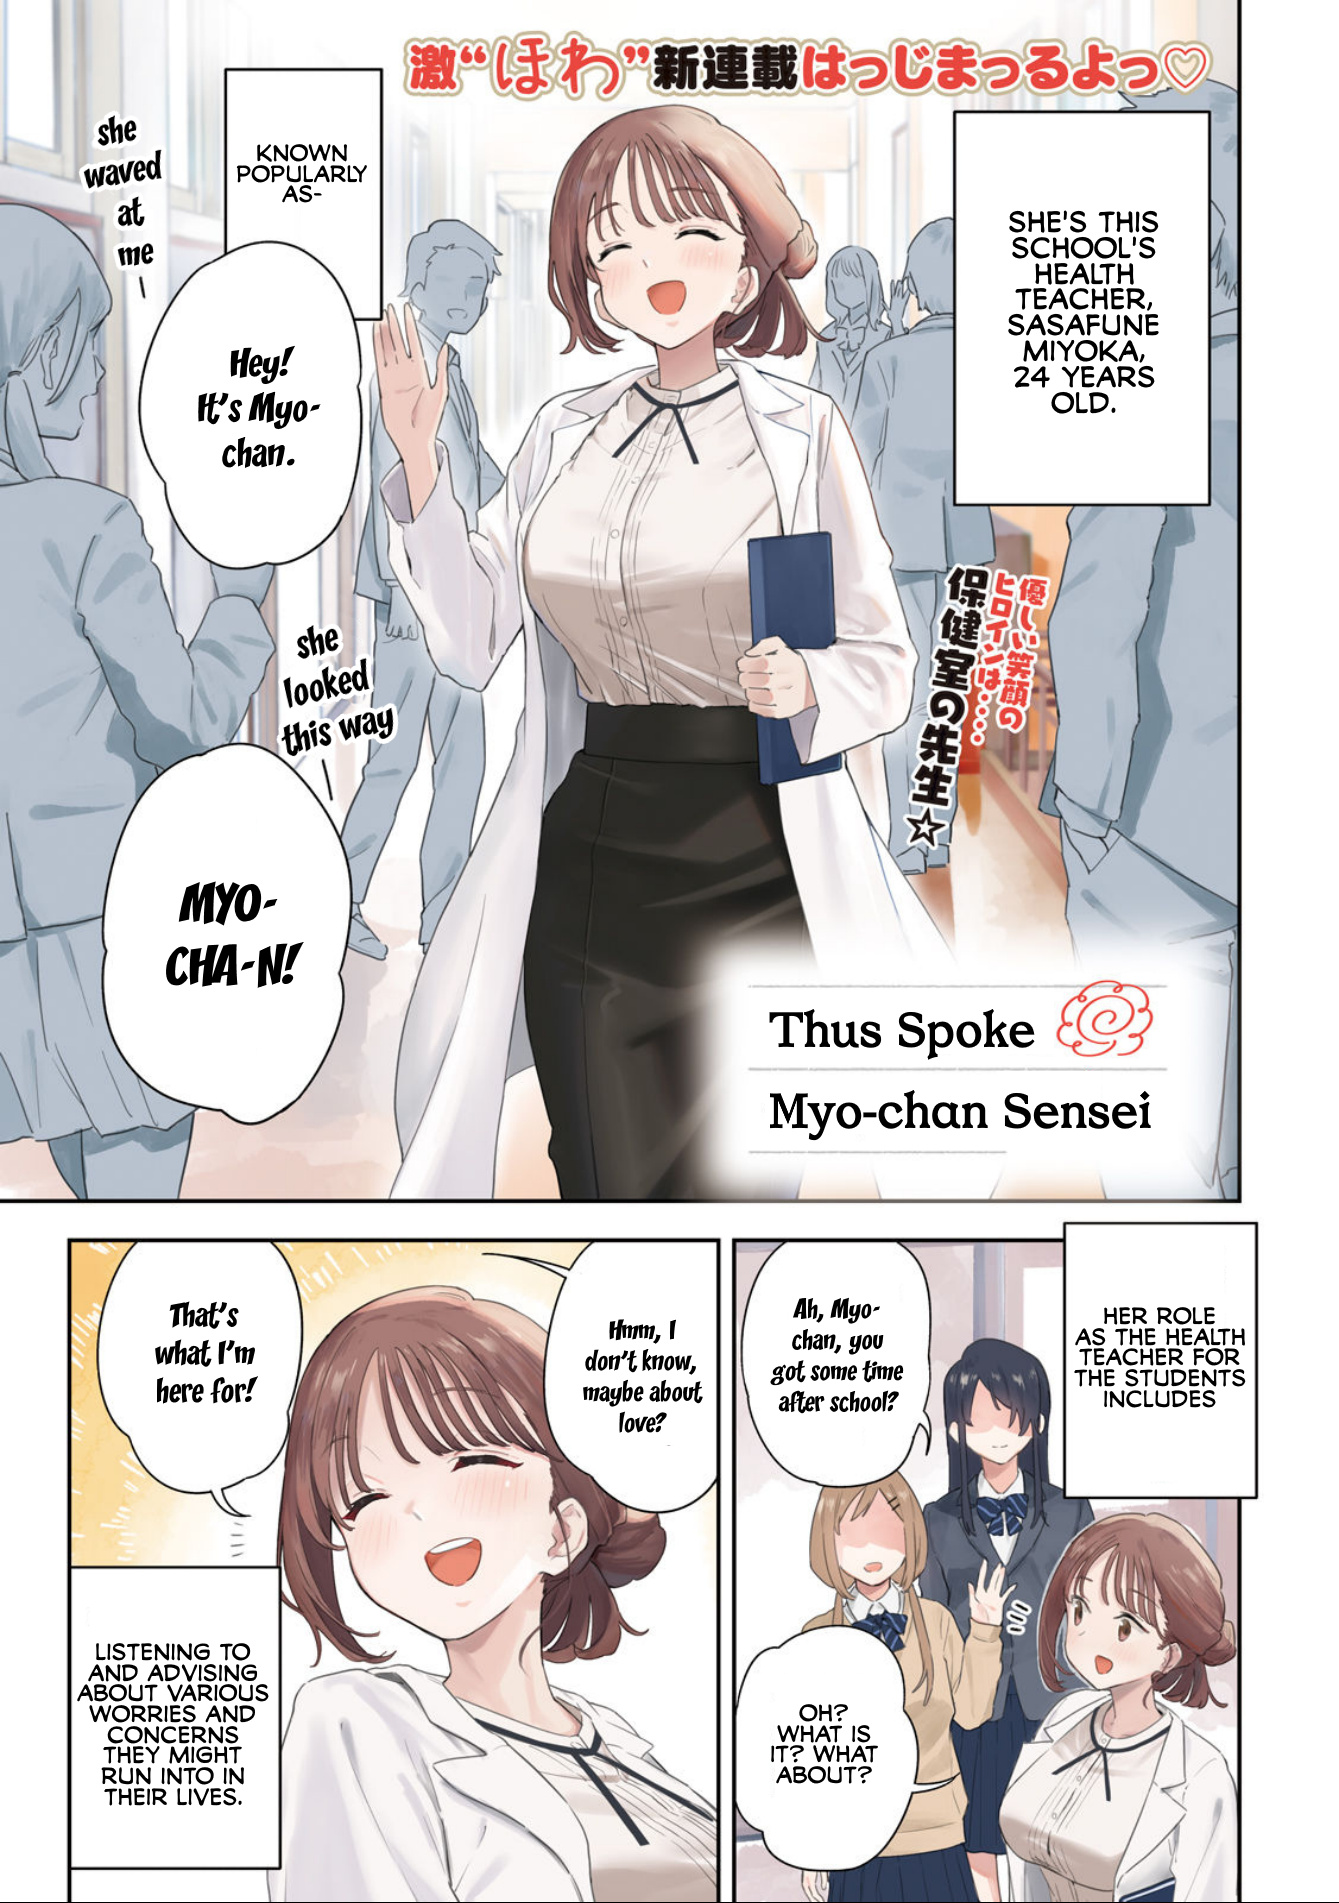 Miyo-Chan Sensei Said So - Page 1